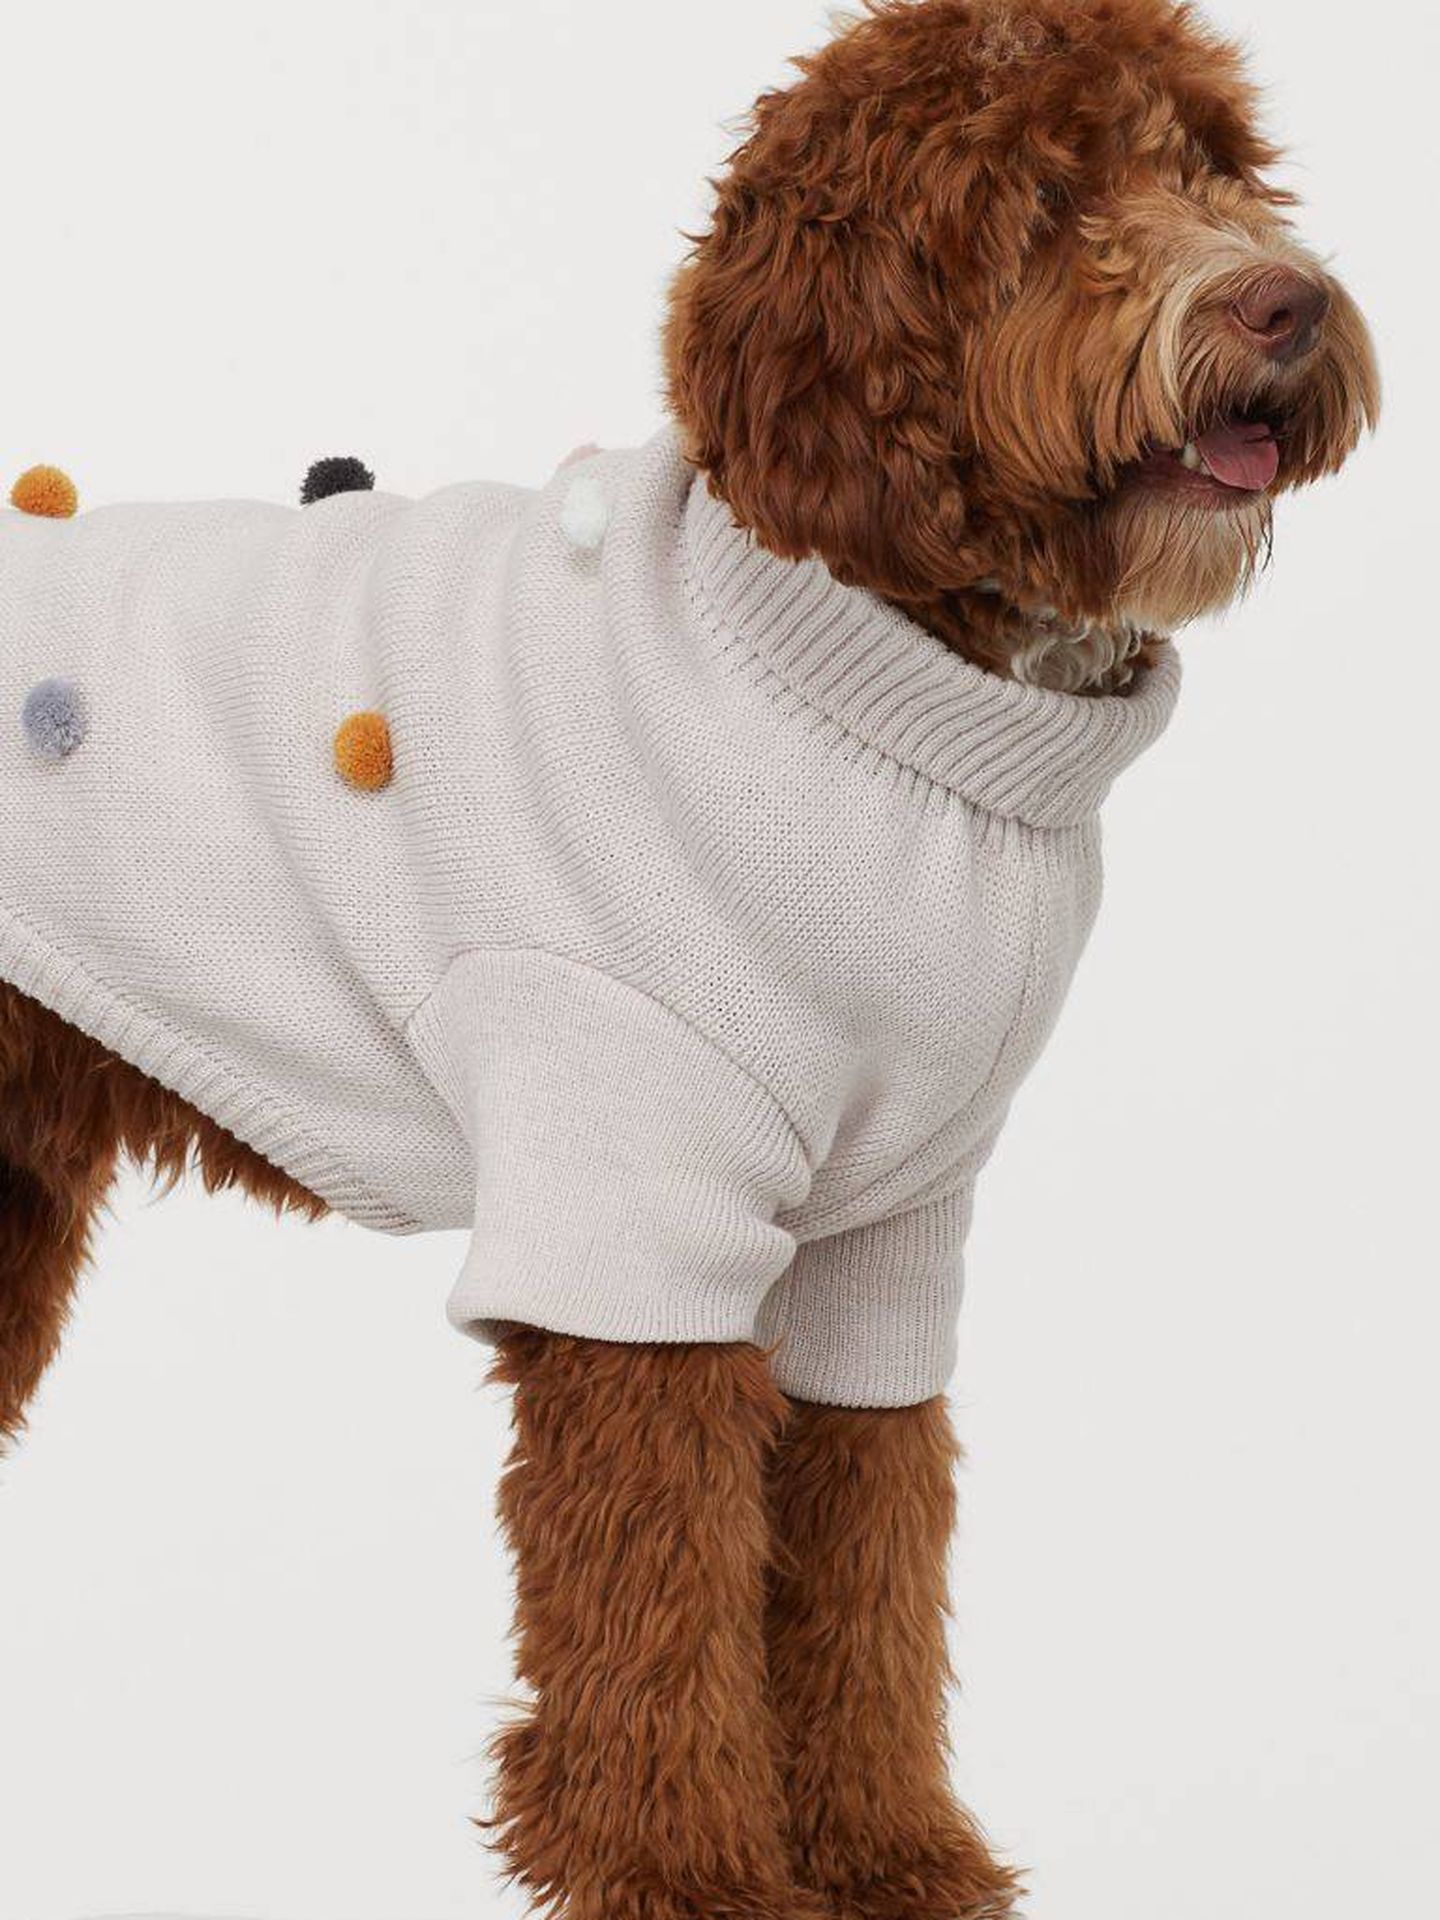 Un jersey para perros de HyM. (Cortesía)